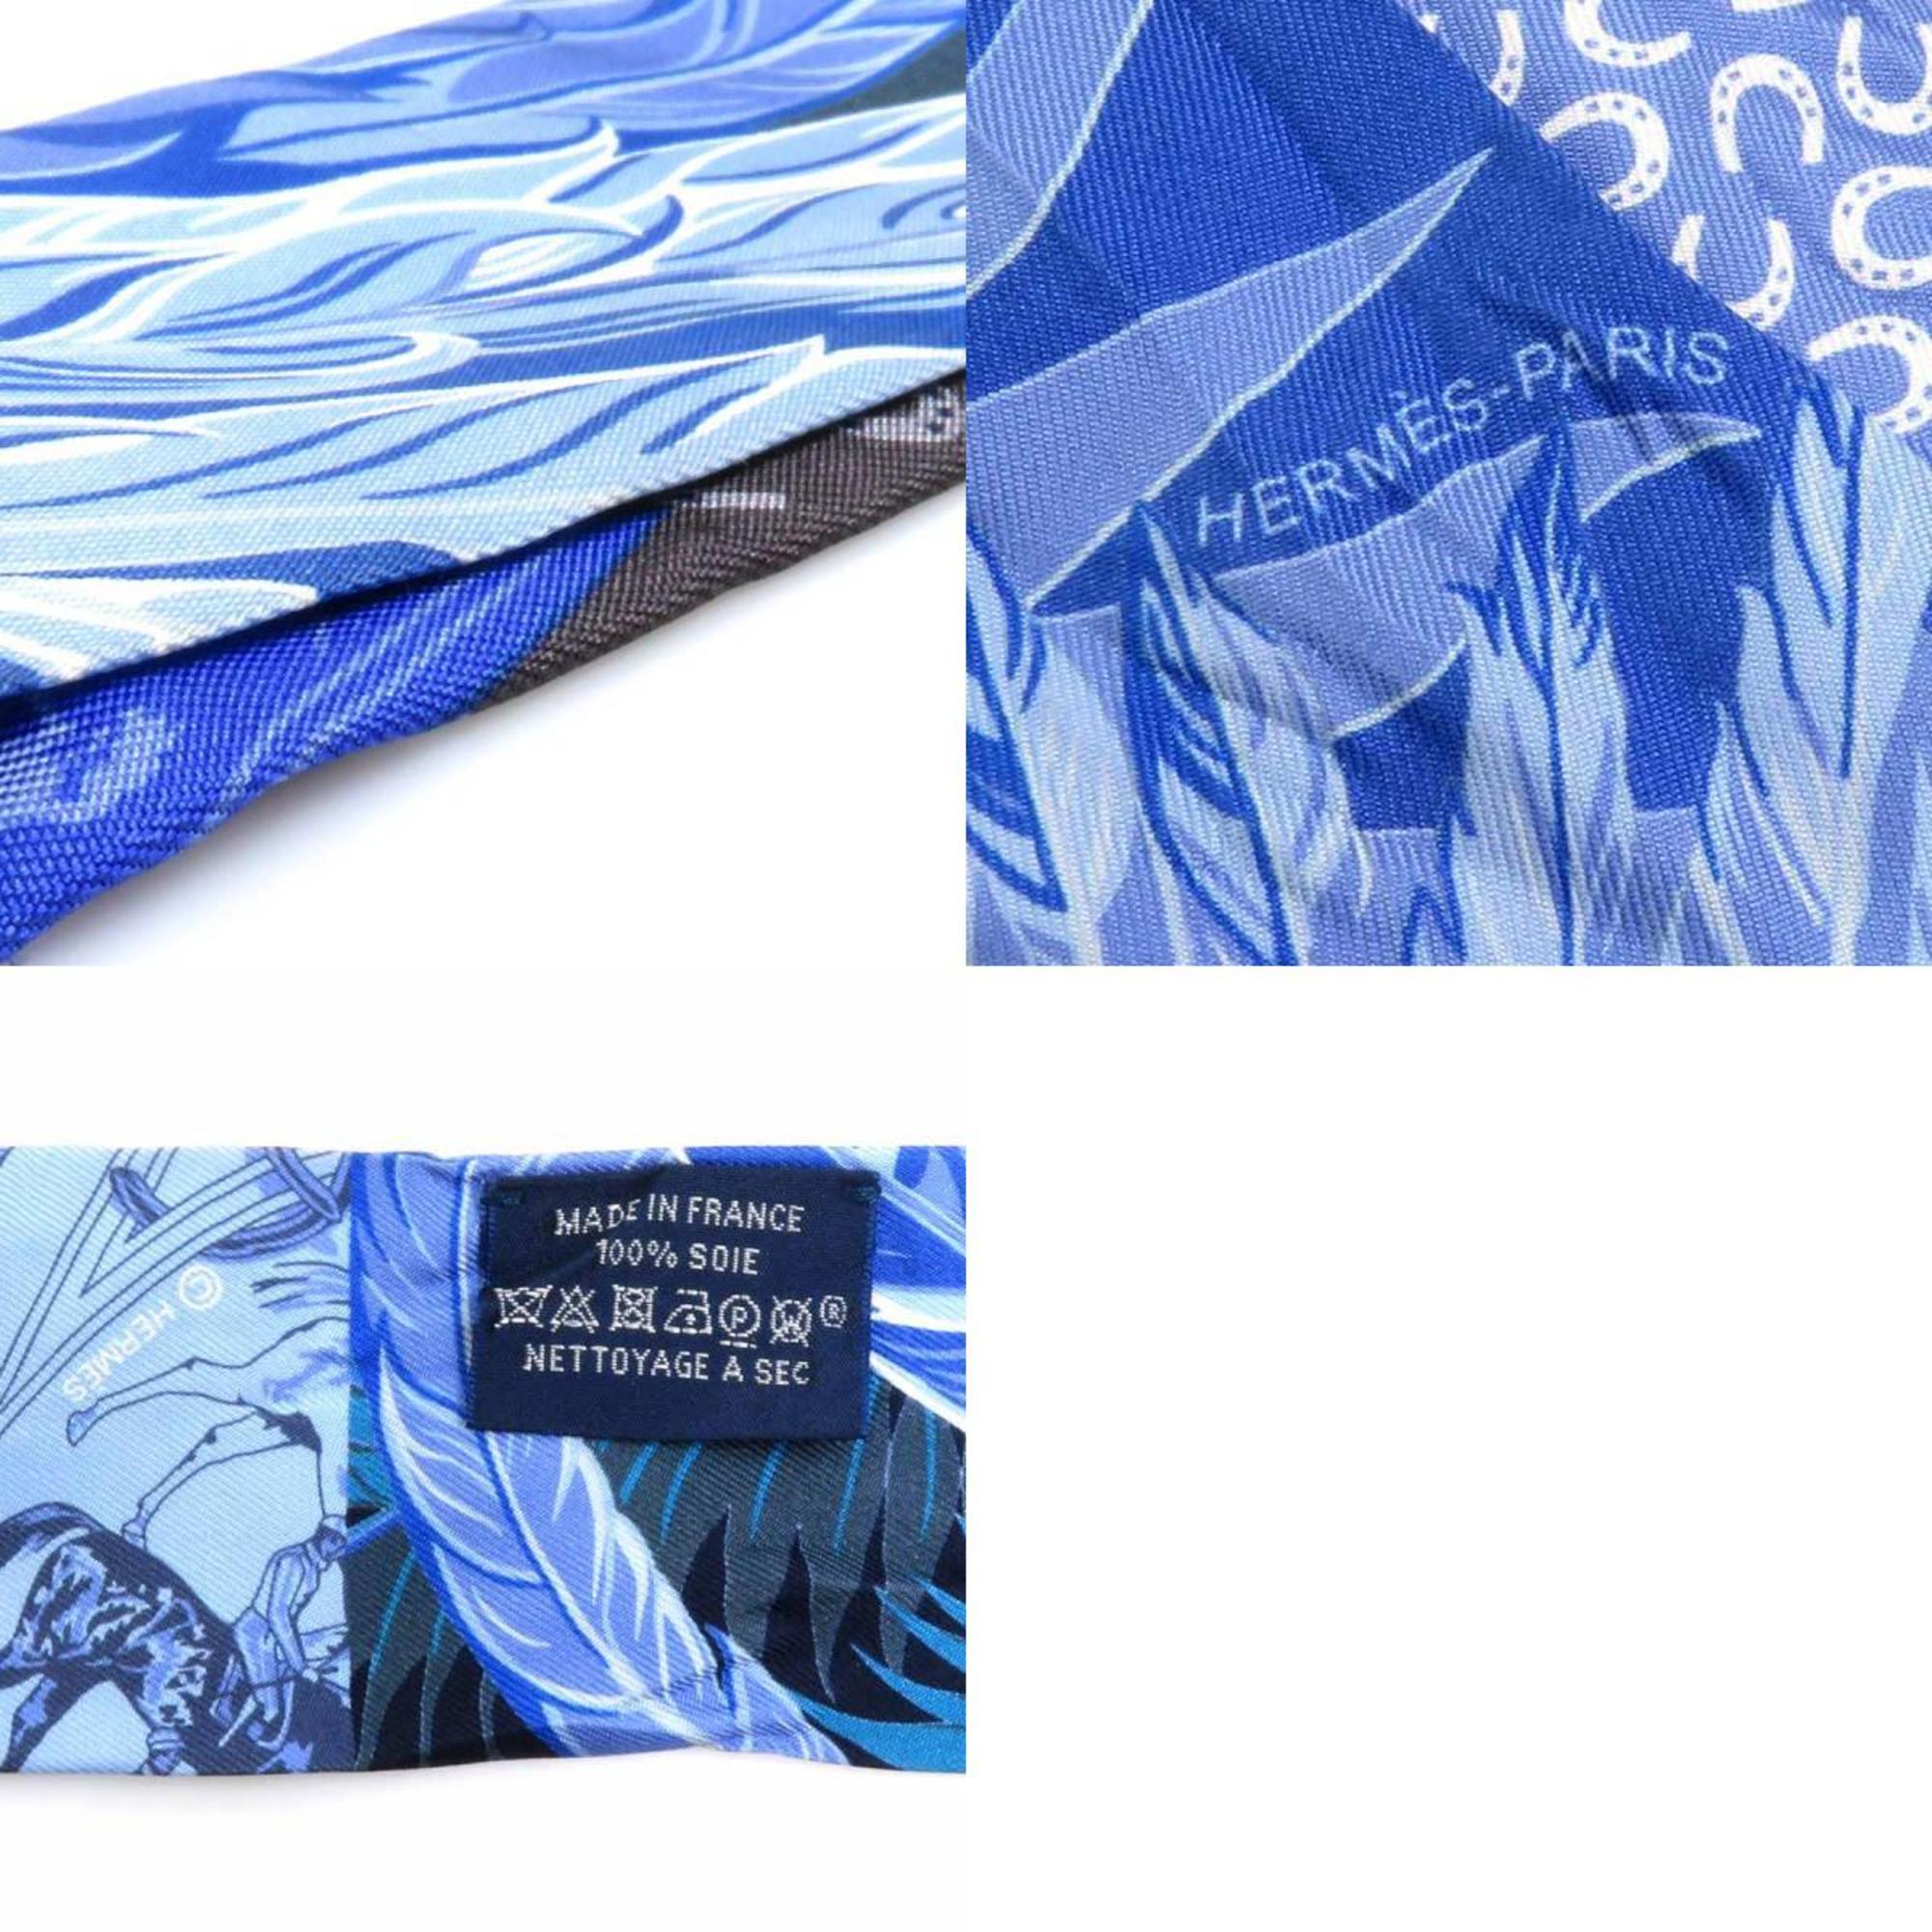 Hermes HERMES Scarf Muffler Twilly Silk Blue/Multicolor Women's e58531f